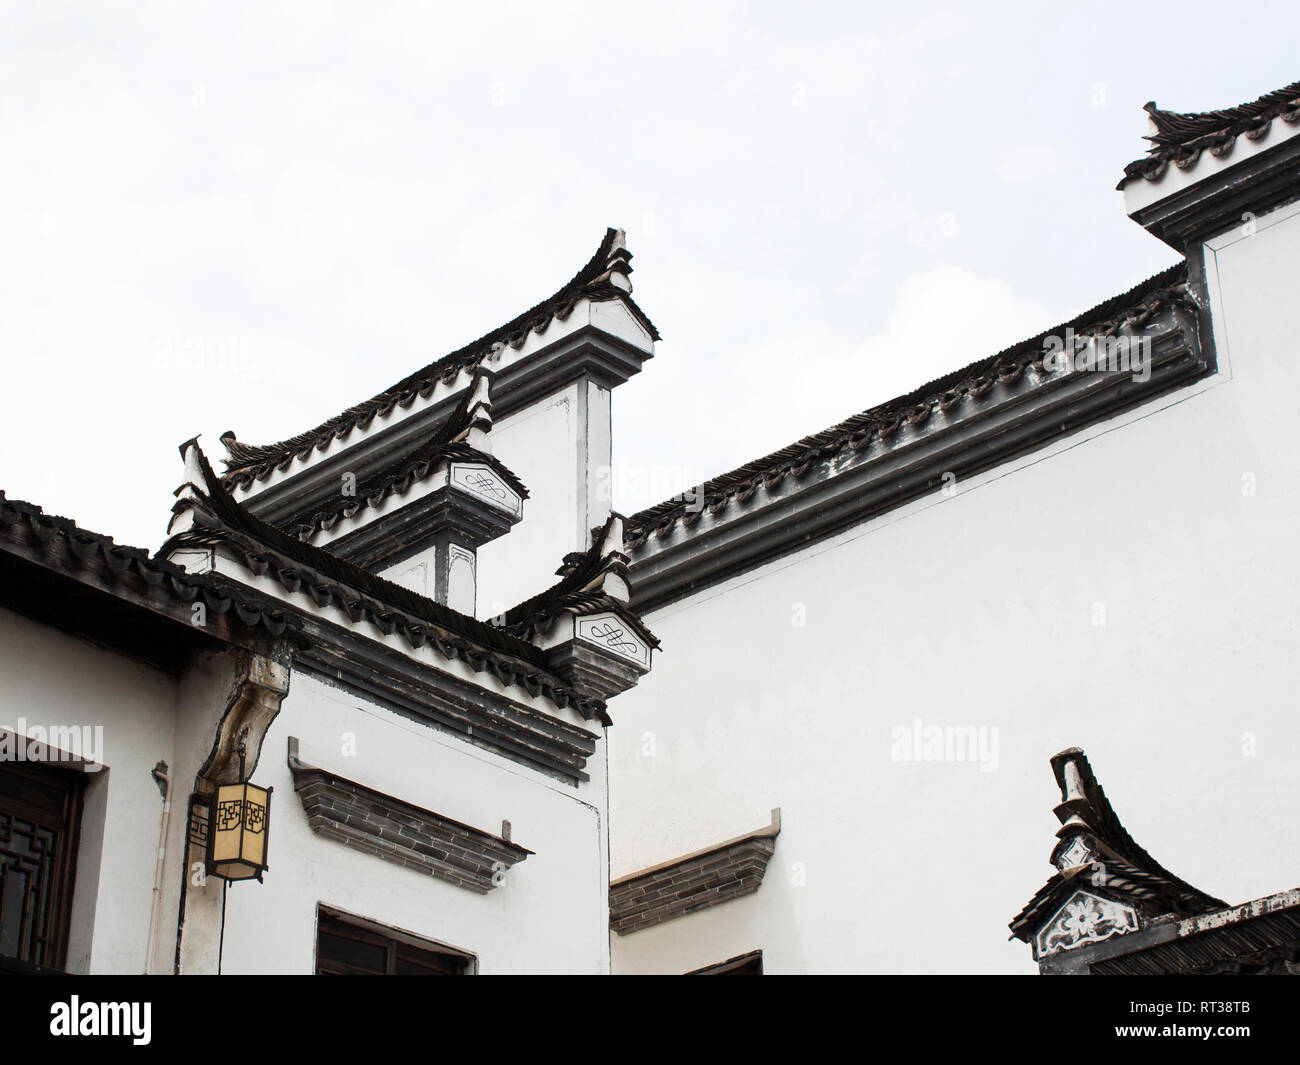 Detalles del techo de la antigua arquitectura china de estilo Hui. Estilo Hui. Wenyuan Shicheng, Hangzhou, Provincia de Zhejiang, China Foto de stock